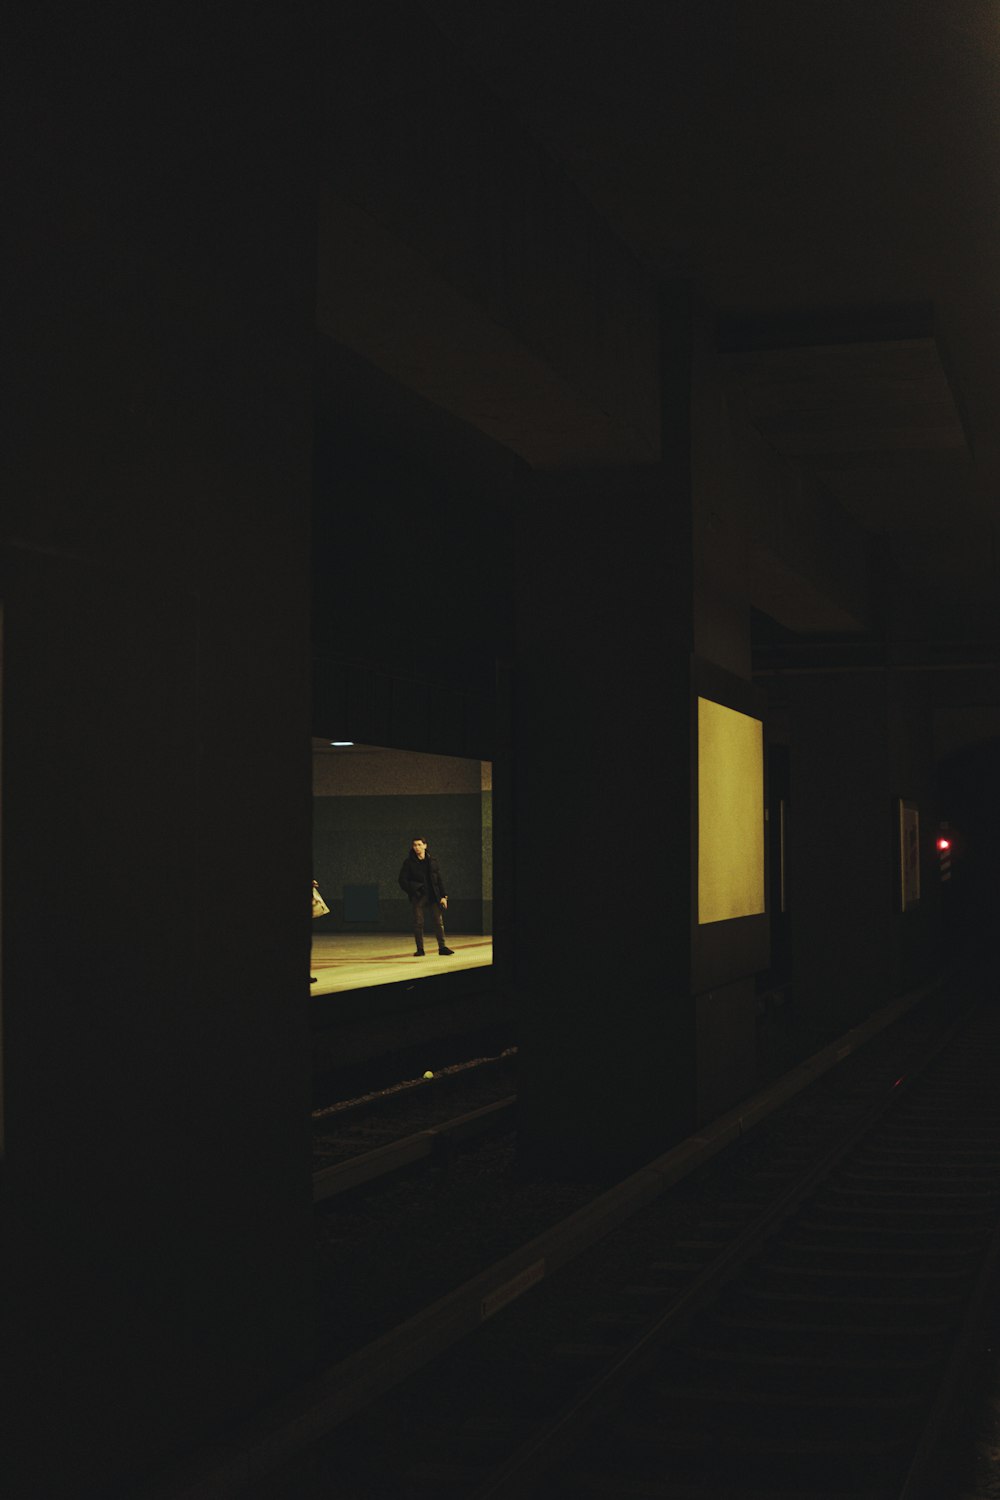 una persona caminando por un pasillo oscuro por la noche